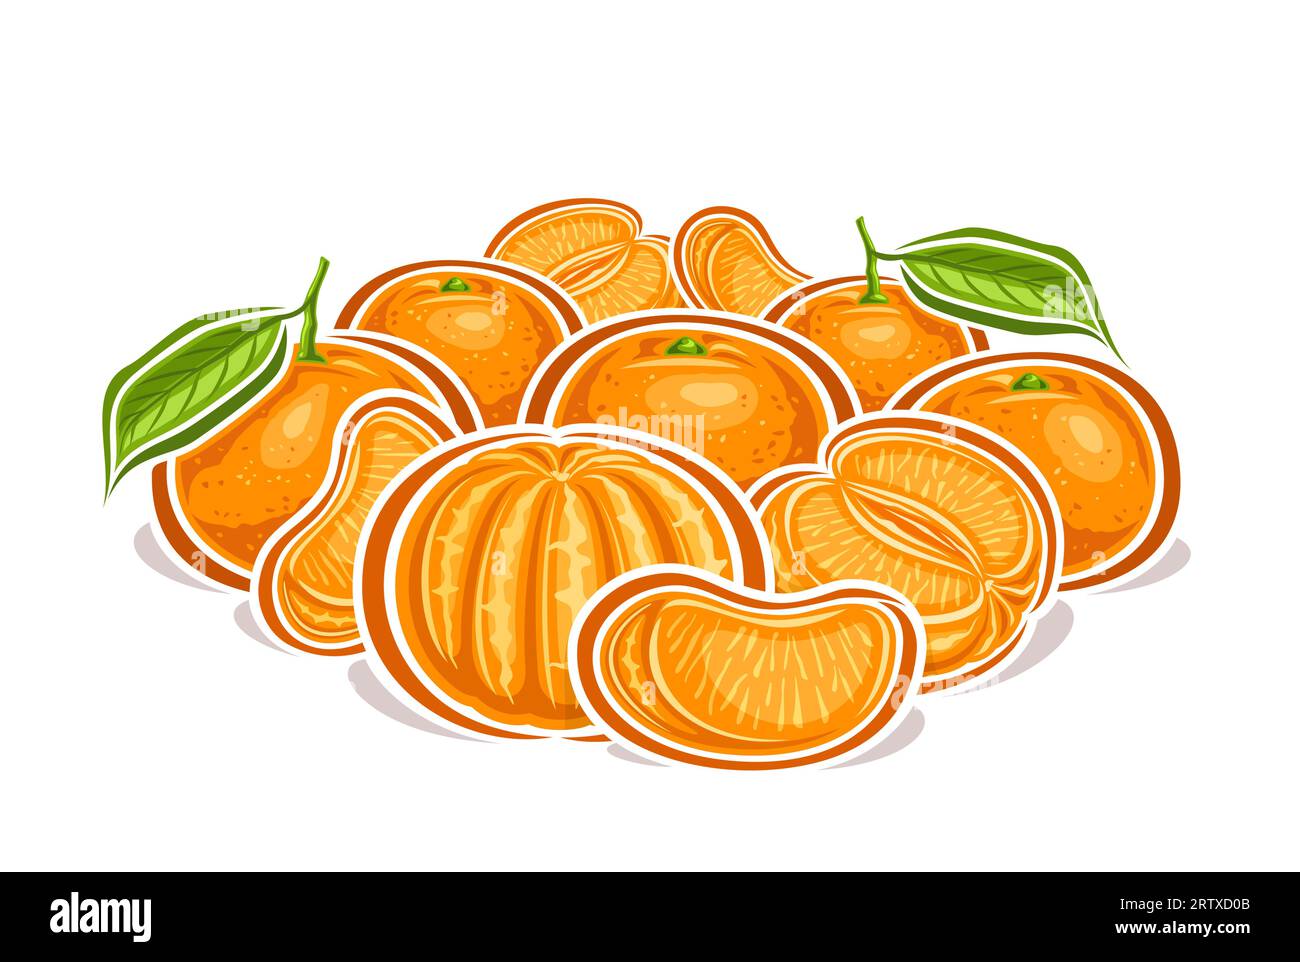 Logo vettoriale per mandarini, poster decorativo orizzontale con disegno cartoni animati composizione STILL Life fruttata mandarino e mandarino, stampa frutta con OMS Illustrazione Vettoriale